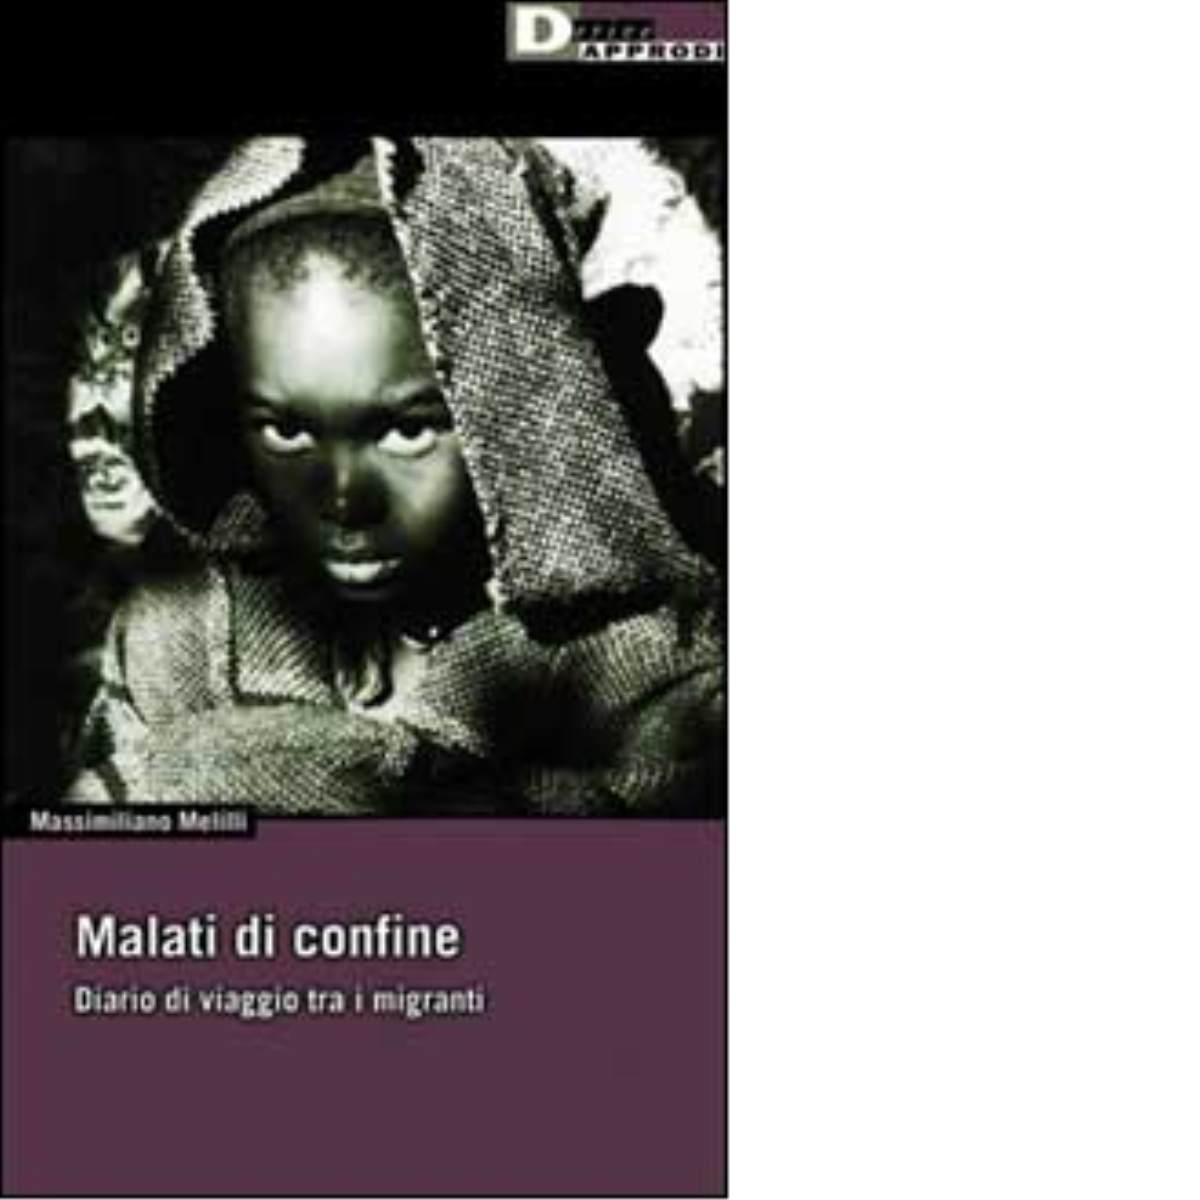 MALATI DI CONFINE - AA.VV. - DeriveApprodi editore, 2002